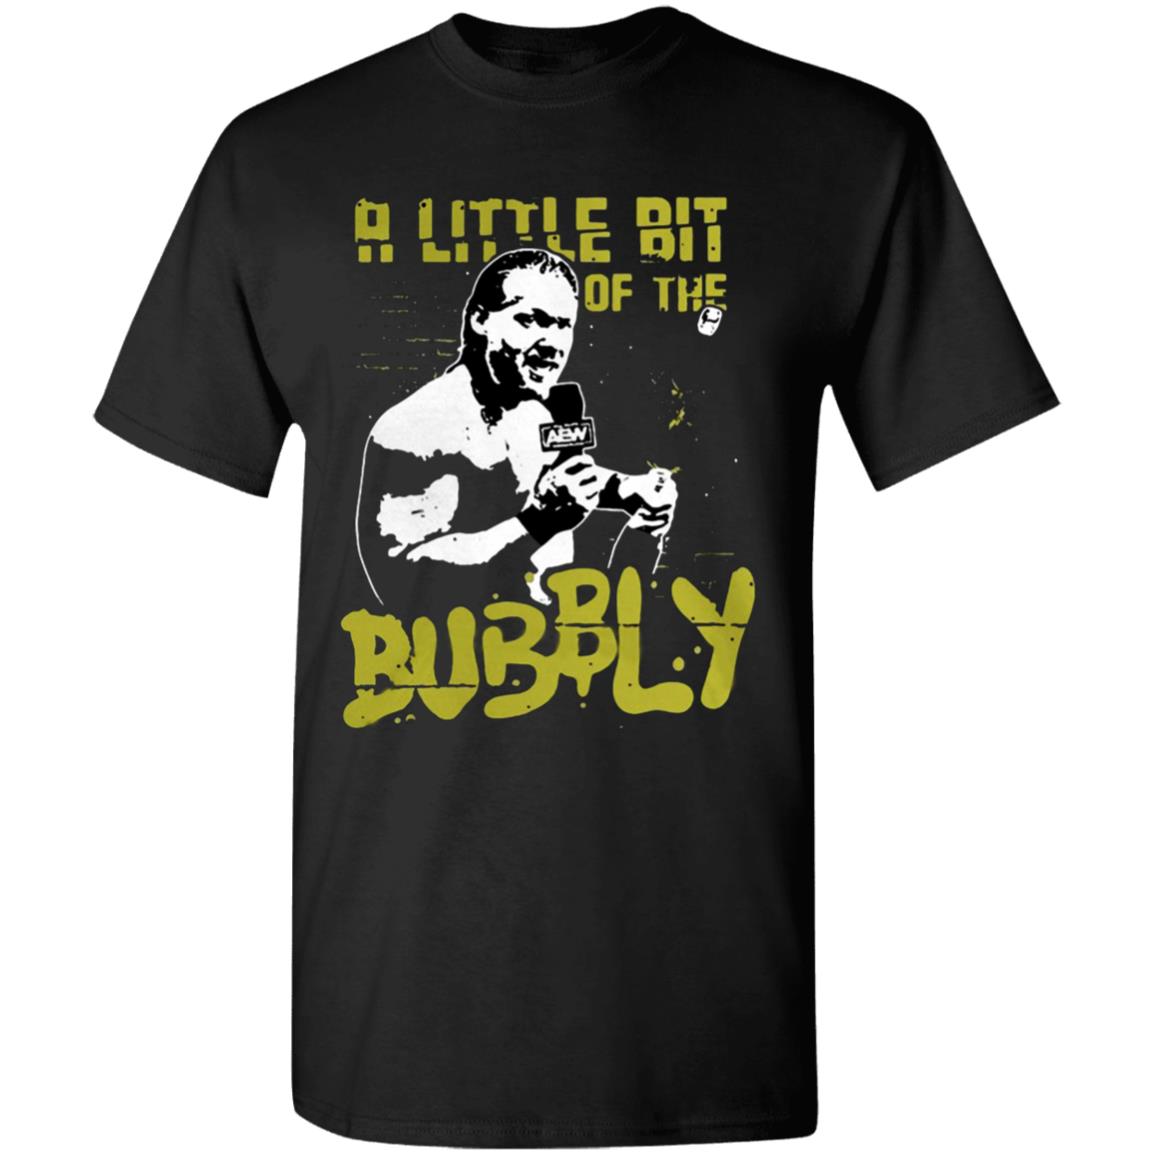 Chris-Jericho-A-Little-Bit-Of-The-Bubbly G500 Gildan 5.3 Oz. T-Shirt